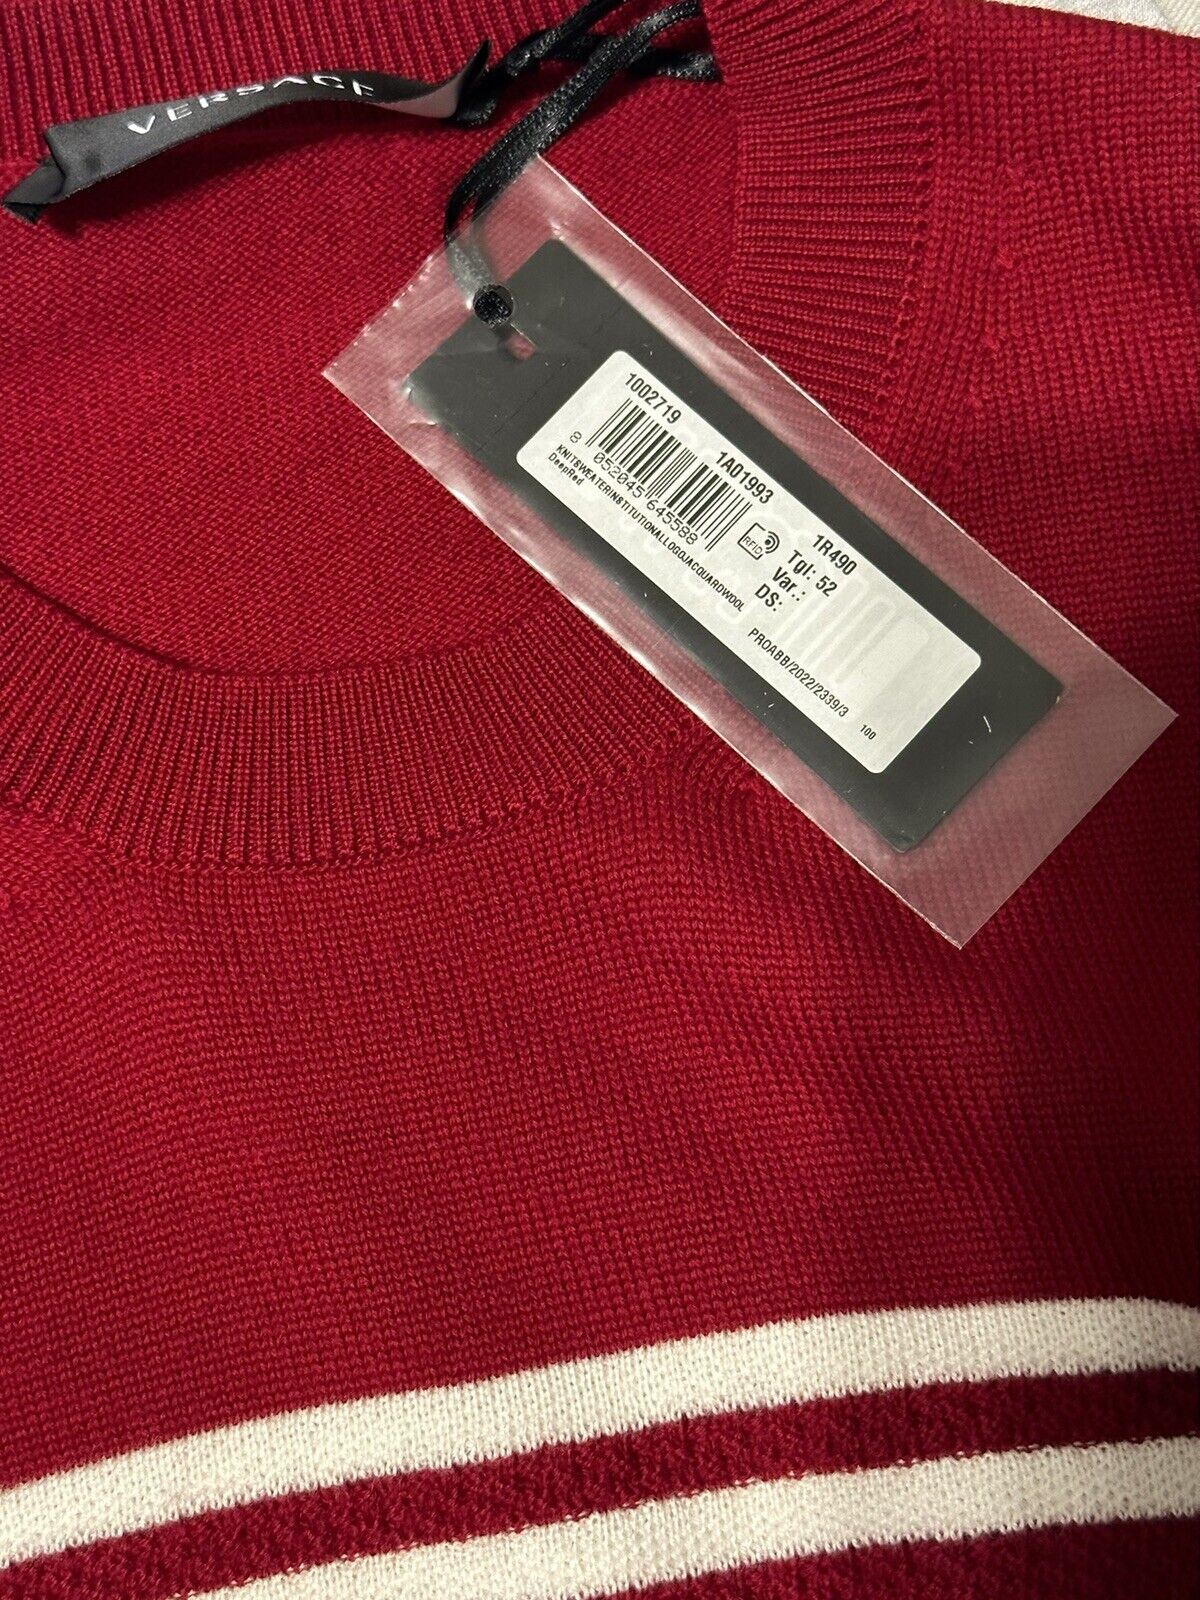 СЗТ $950 Versace Medusa Logo Шерстяной вязаный свитер Красный 52 (XL) Италия 1002719 